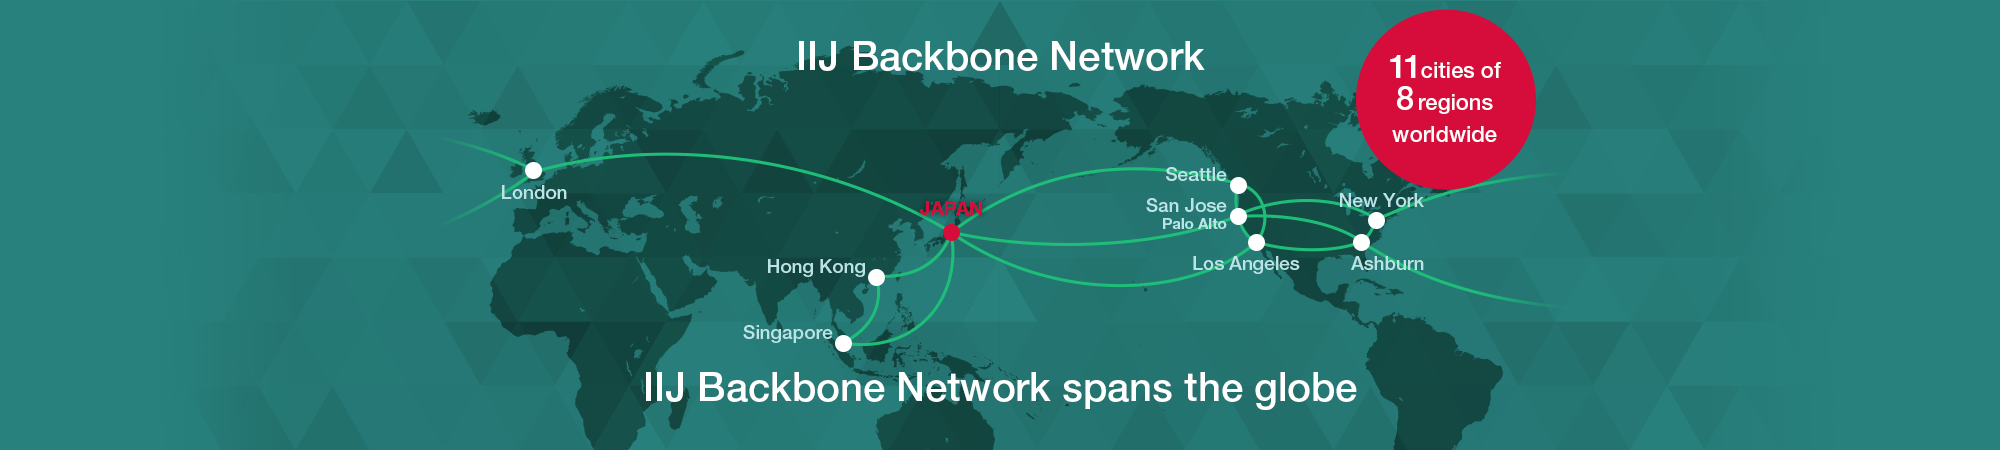 IIJ Backbone Network spans the globe